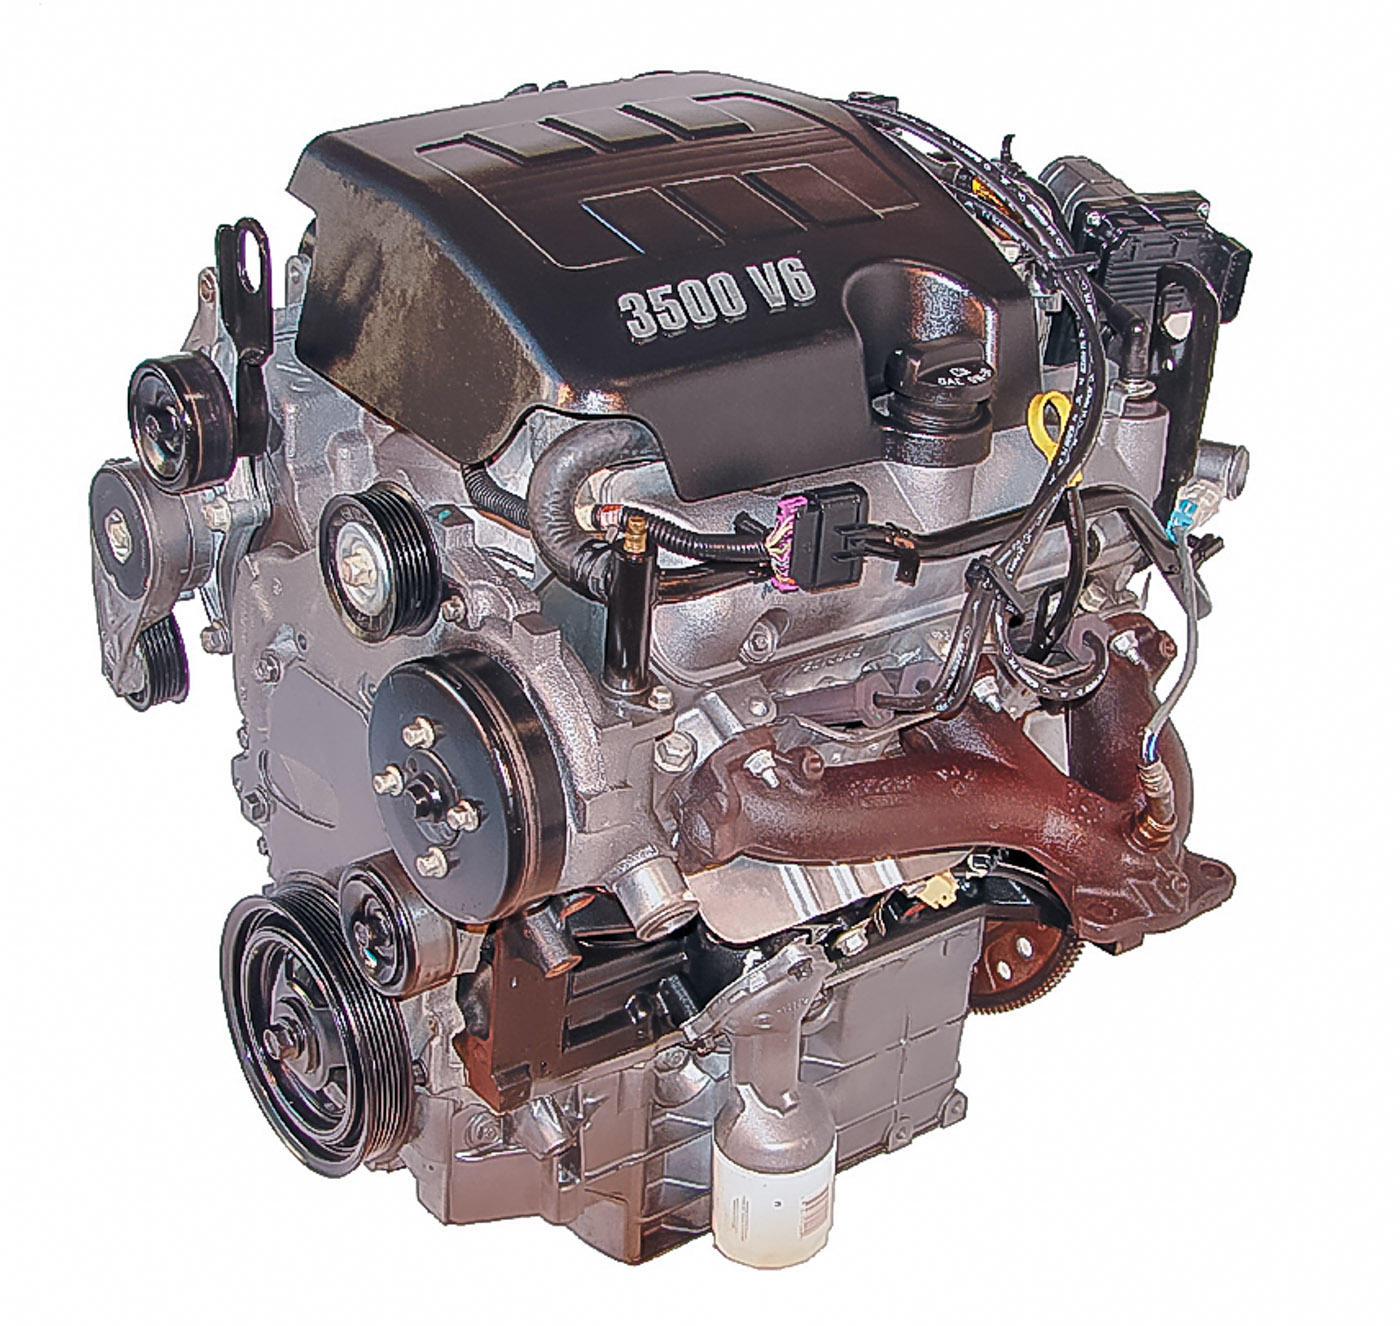 2004 saturn vue engine 3.5 l v6